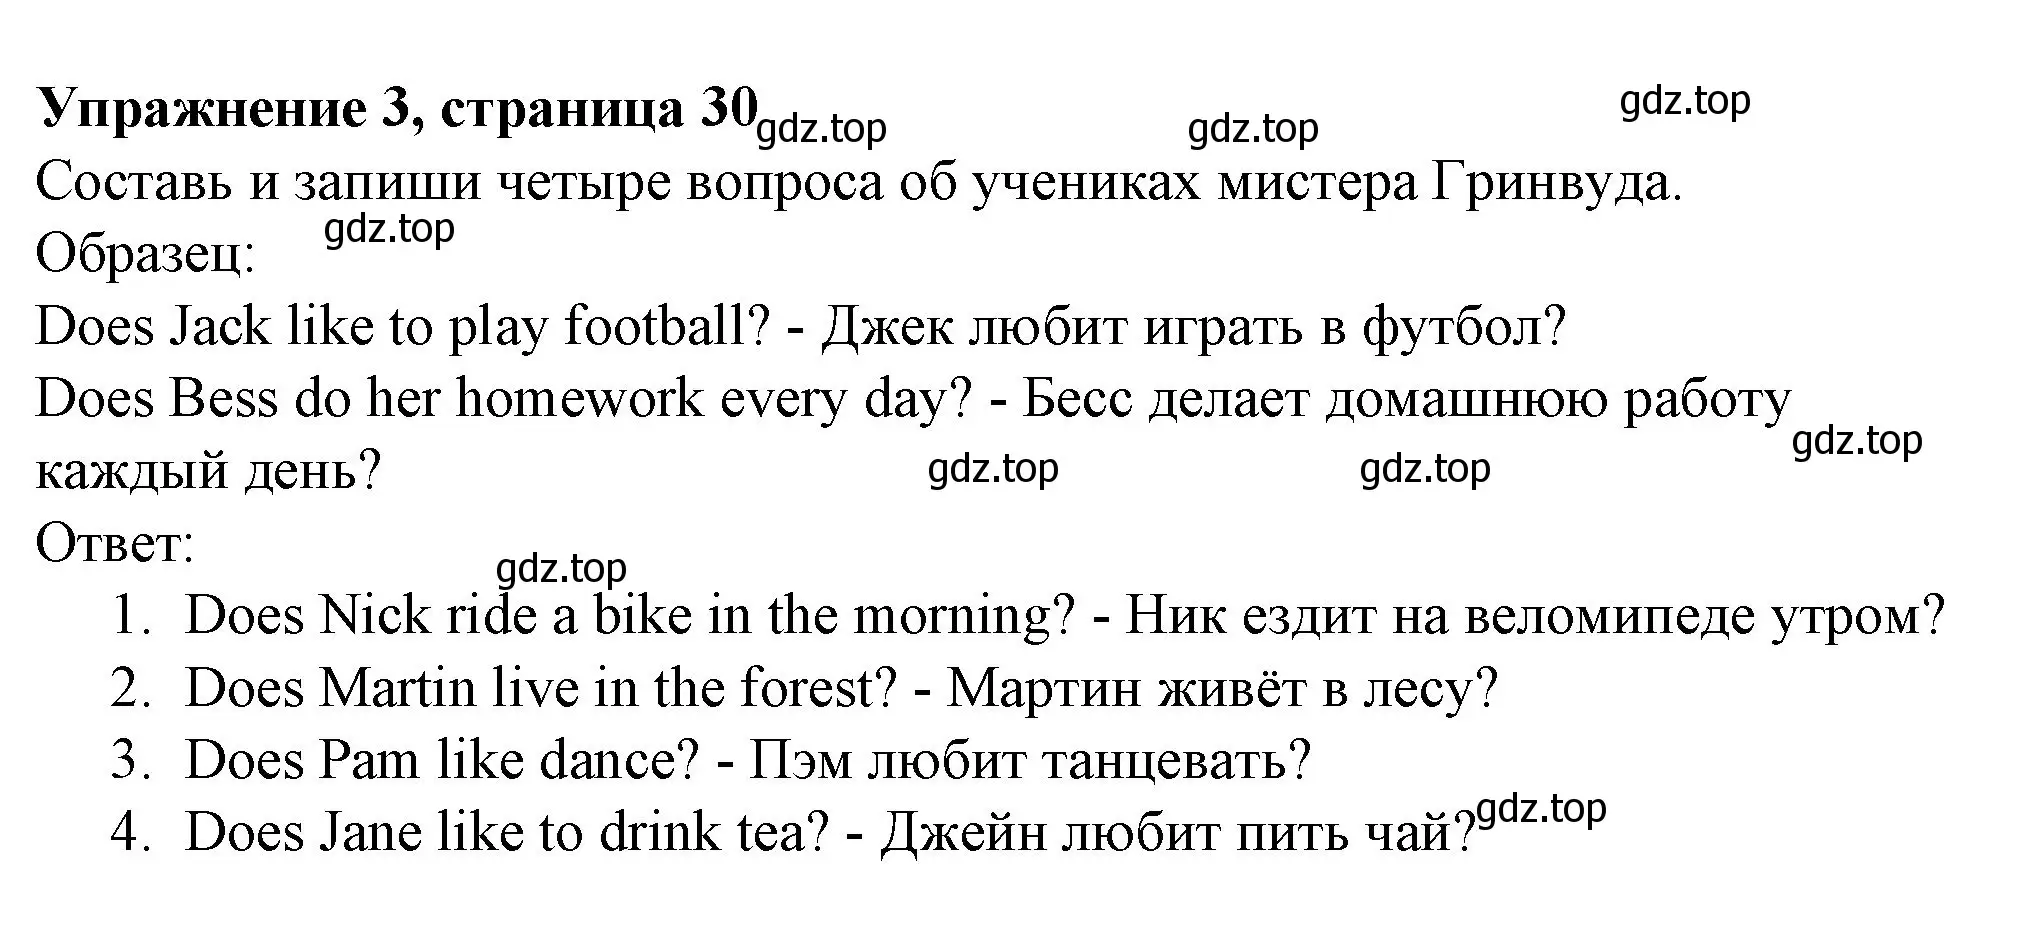 Решение номер 3 (страница 30) гдз по английскому языку 3 класс Биболетова, Денисенко, рабочая тетрадь